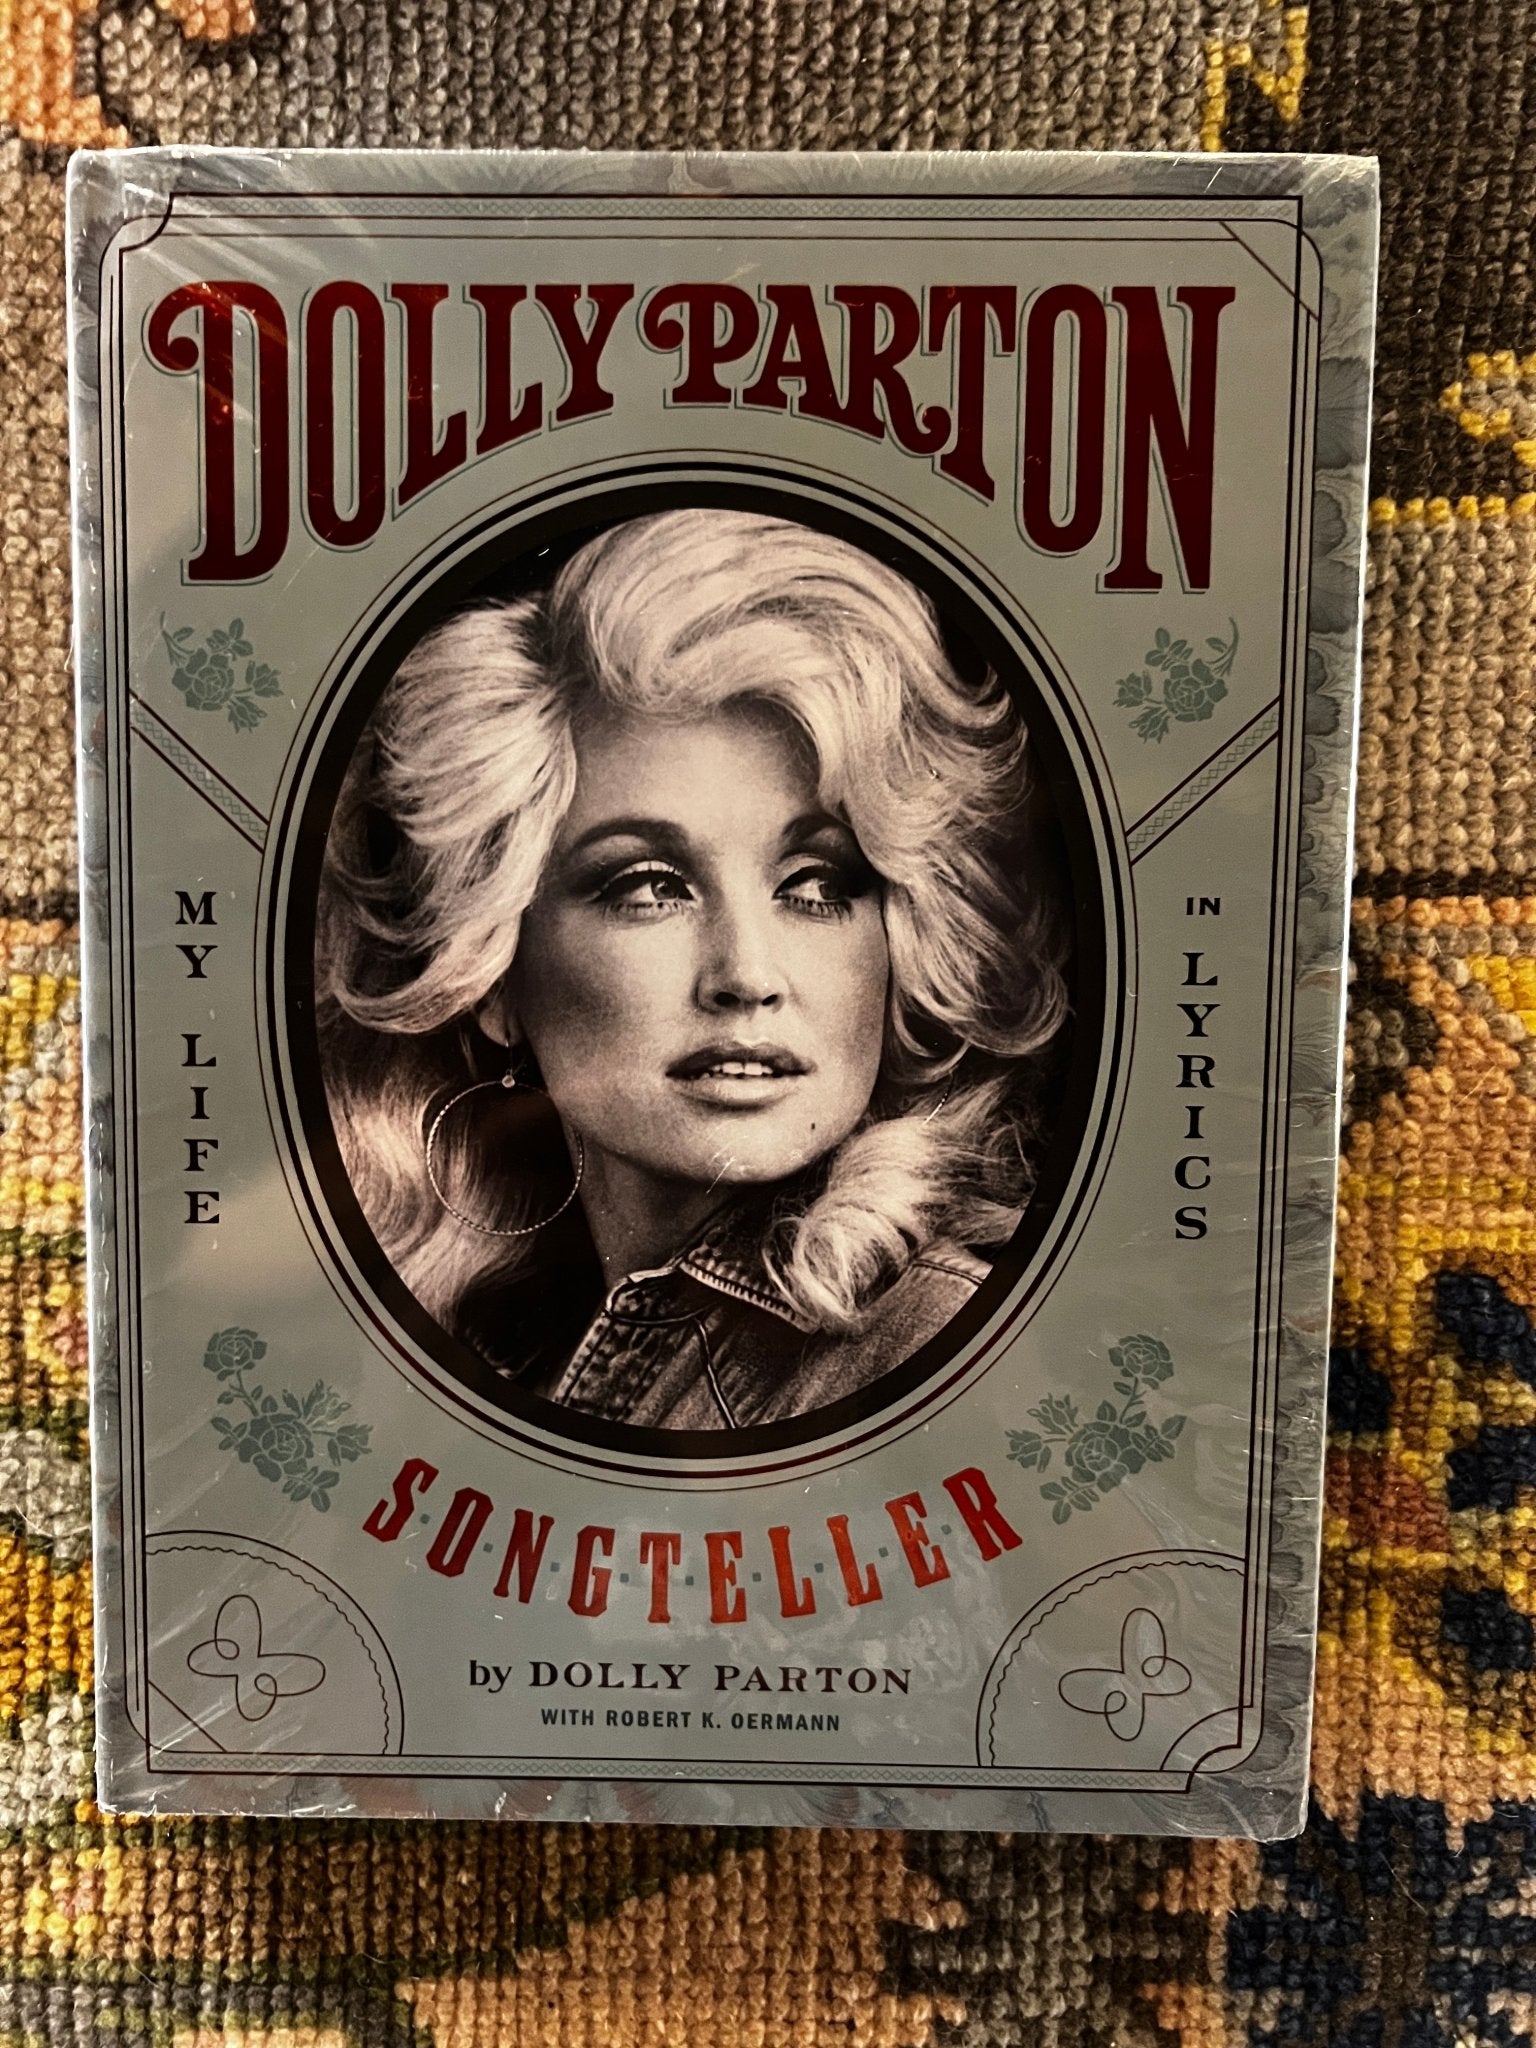 Dolly Parton: Songteller Coffee Table Book | Banana Manor Rug Company